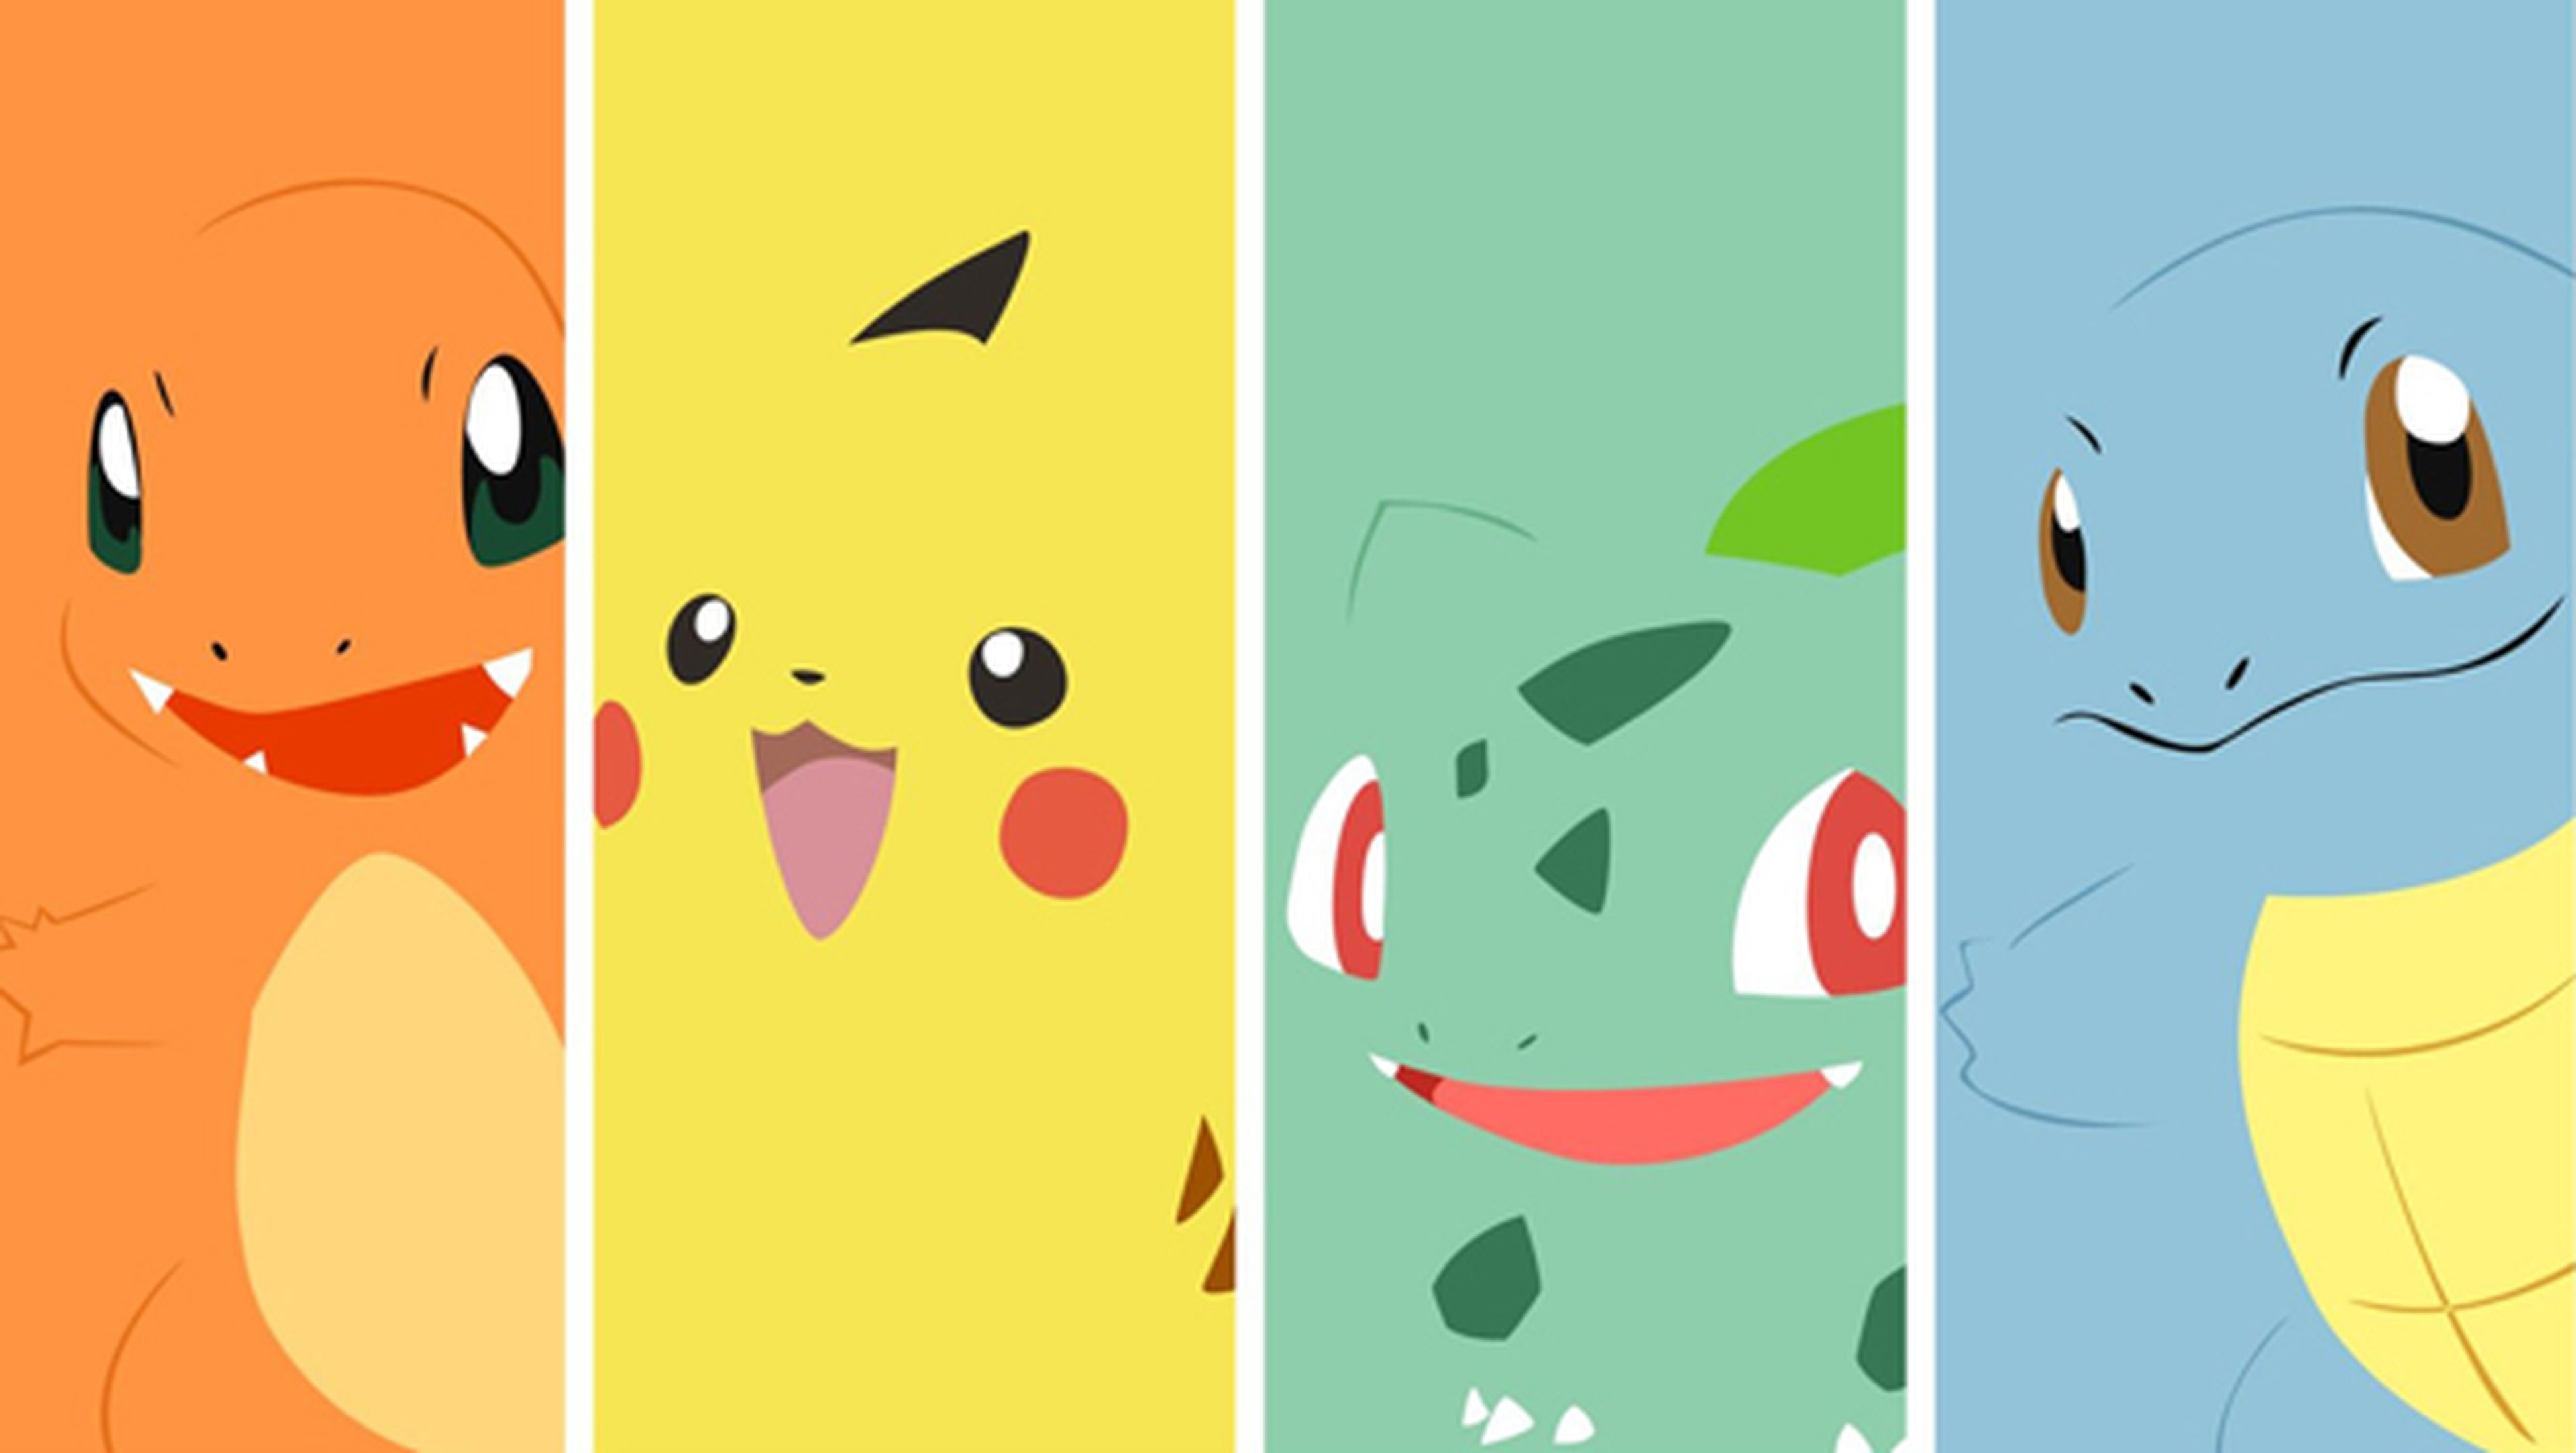 Pokémon GO - Tipos de Pokémon y puntos fuertes y débiles de cada uno.